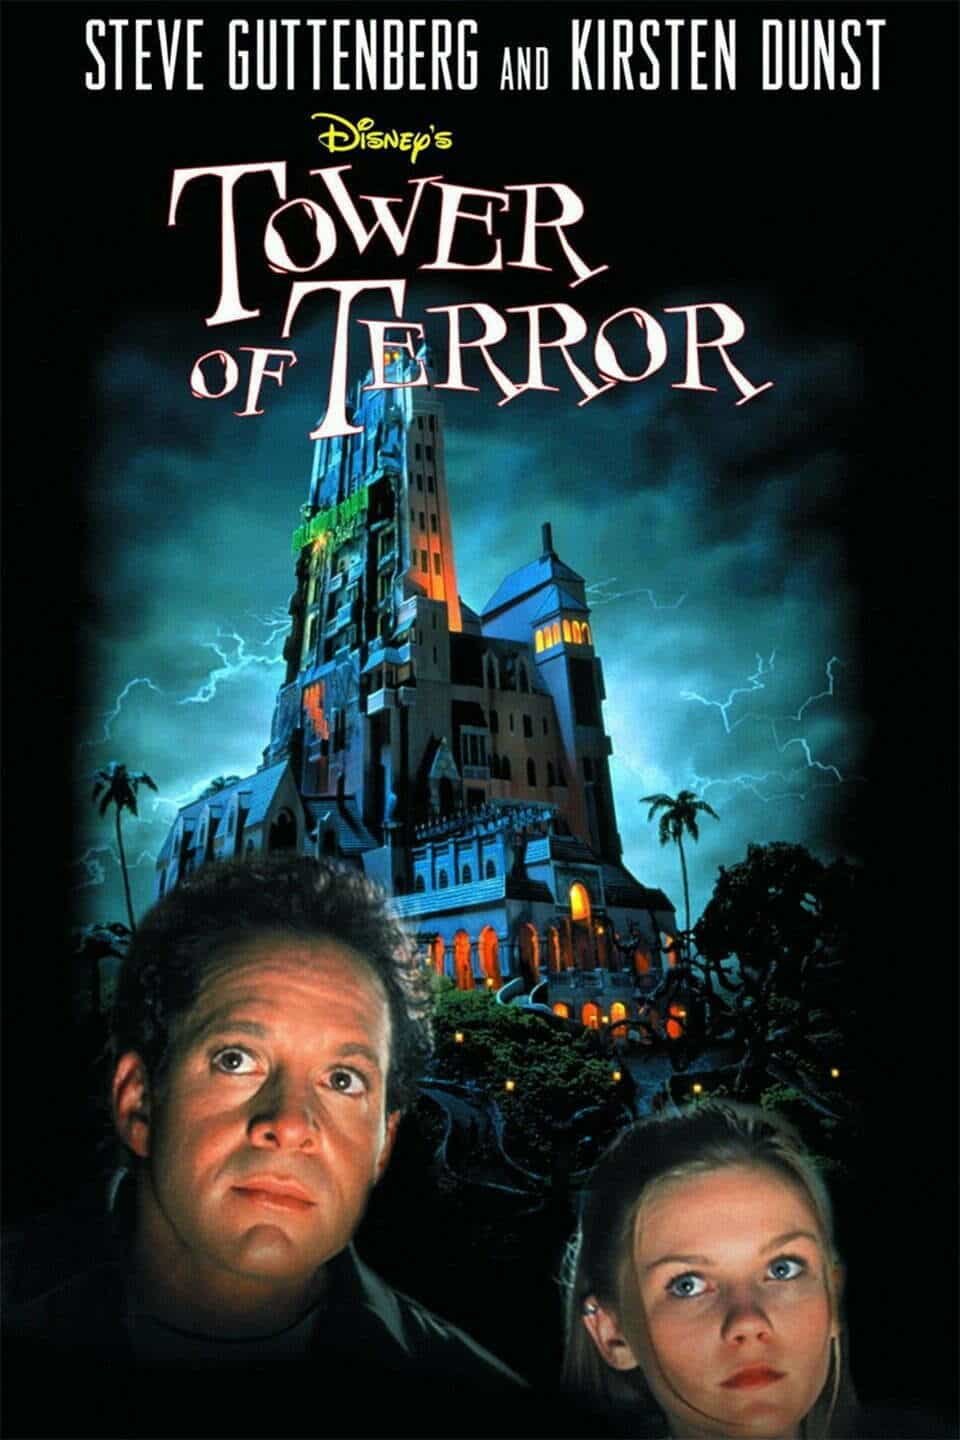 Affiche du film "La Tour de la Terreur" de Disney mettant en vedette Steve Guttenberg et Kirsten Dunst, avec un hôtel hanté et un ciel d'orage en arrière-plan.